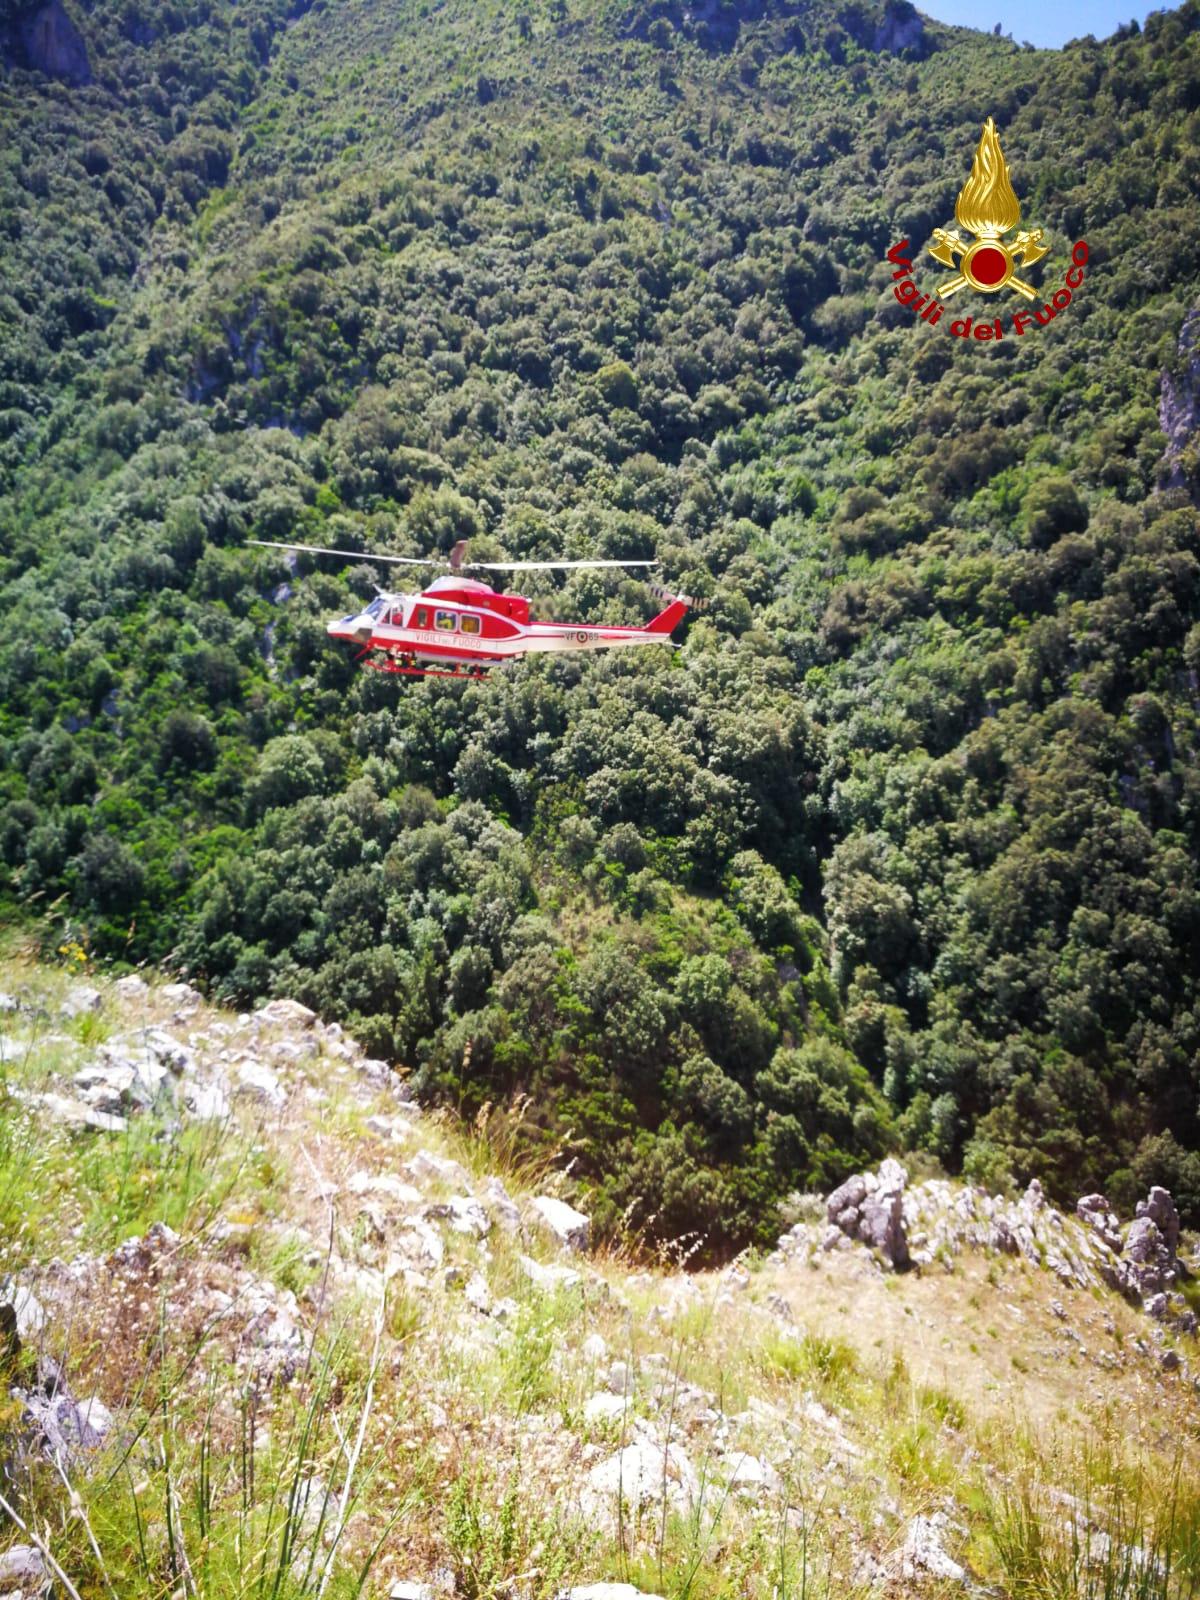 Escursionista disperso a Sicignano degli Alburni, salvato dai soccorritori